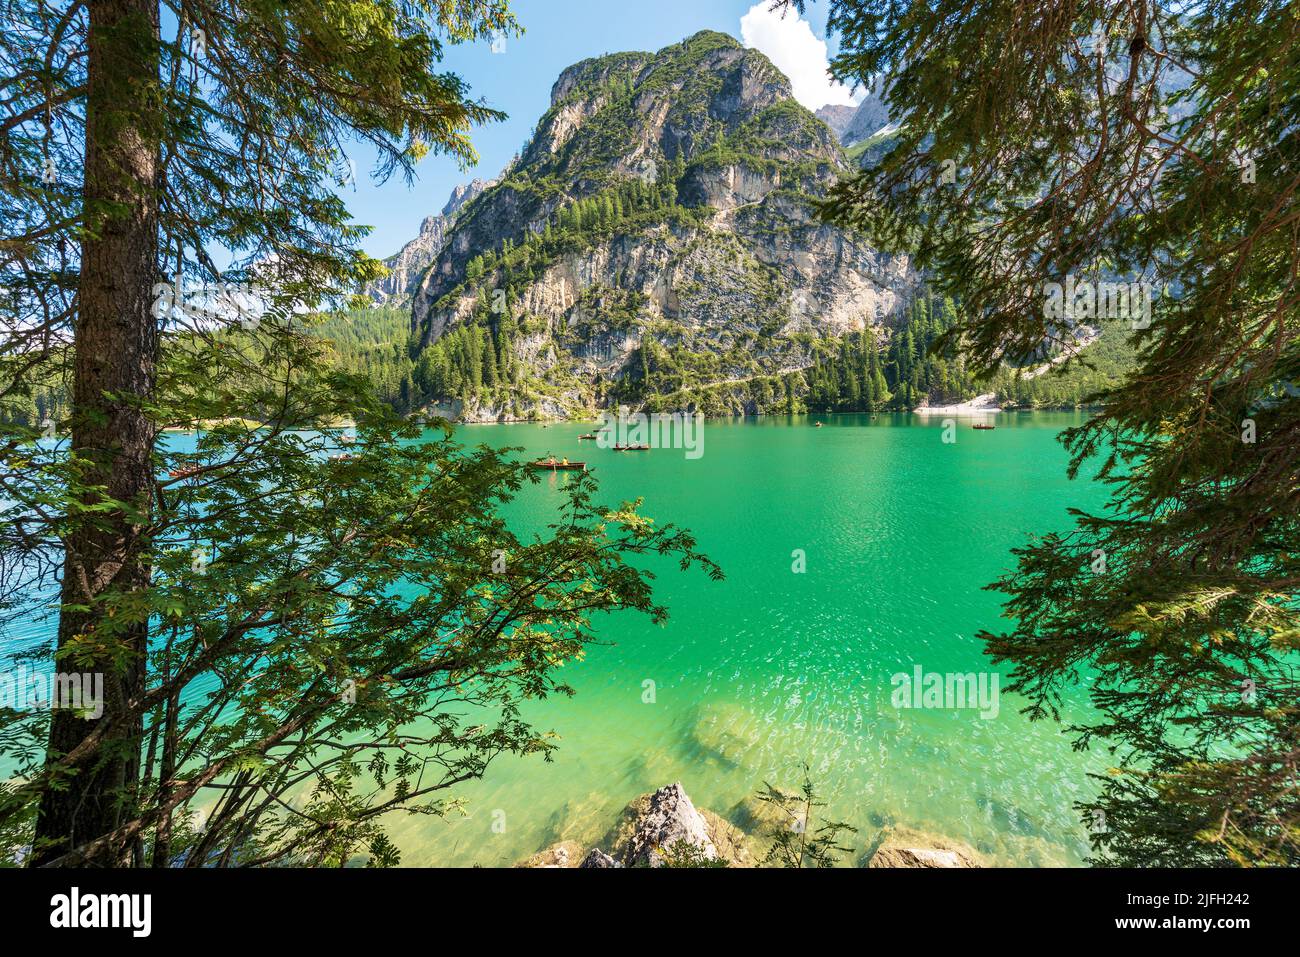 Lago di Prags oder Pragser Wildsee. Kleiner alpiner See und Gebirgskette des Sasso del Signore. Dolomiten, Südtirol, Trentino-Südtirol, Italien. Stockfoto